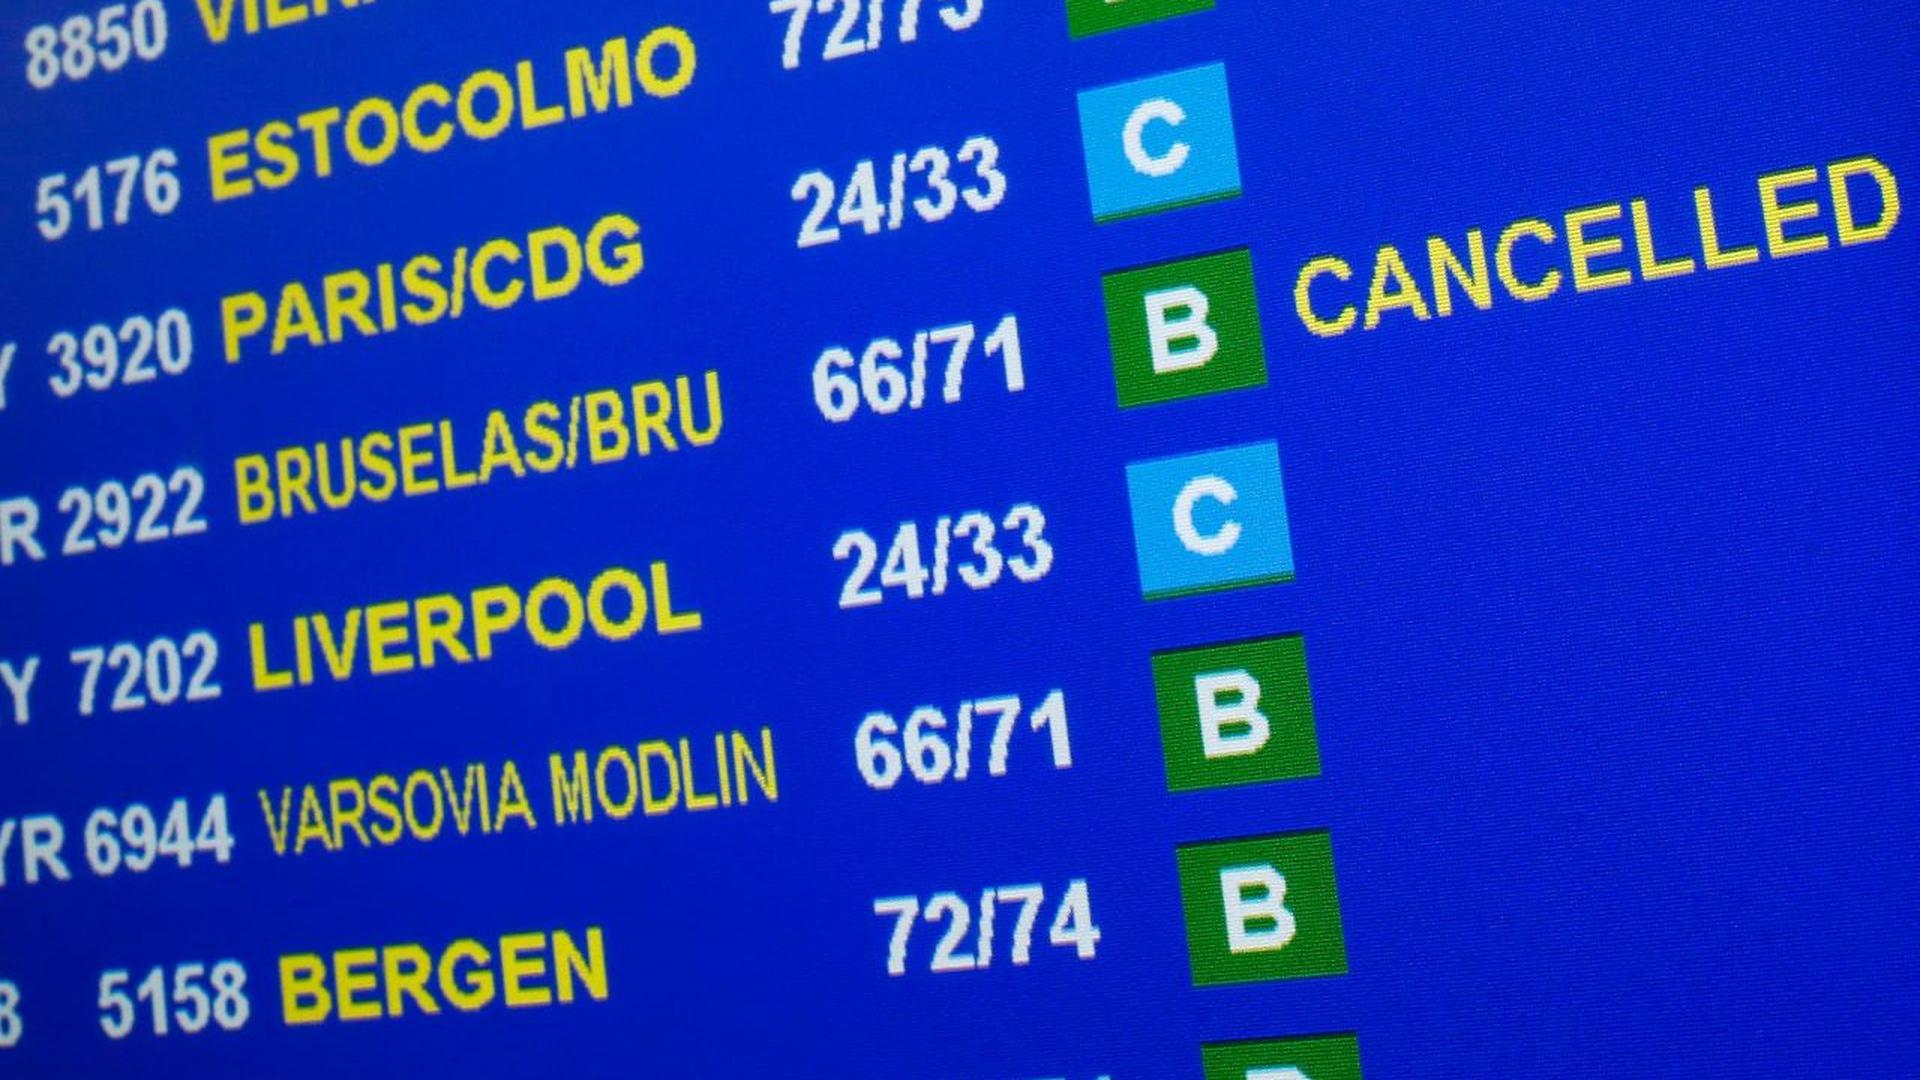 Tous les vols vers et depuis Bruxelles sont annulés.